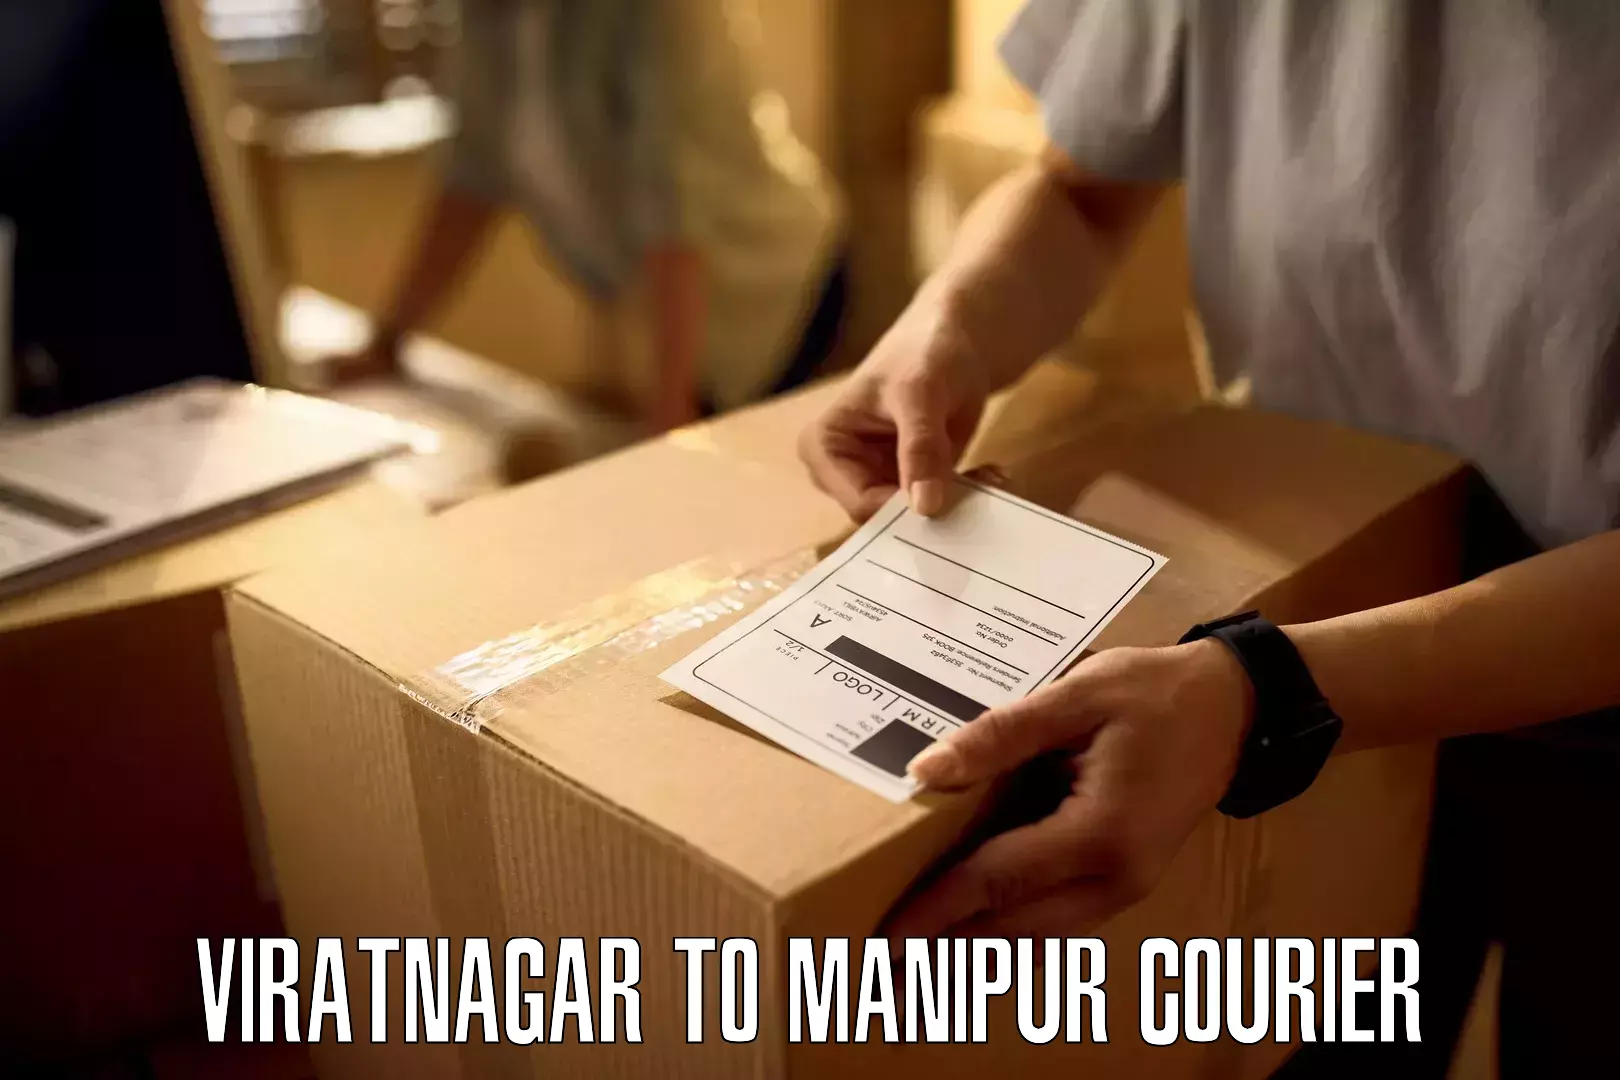 Medical delivery services Viratnagar to Moirang